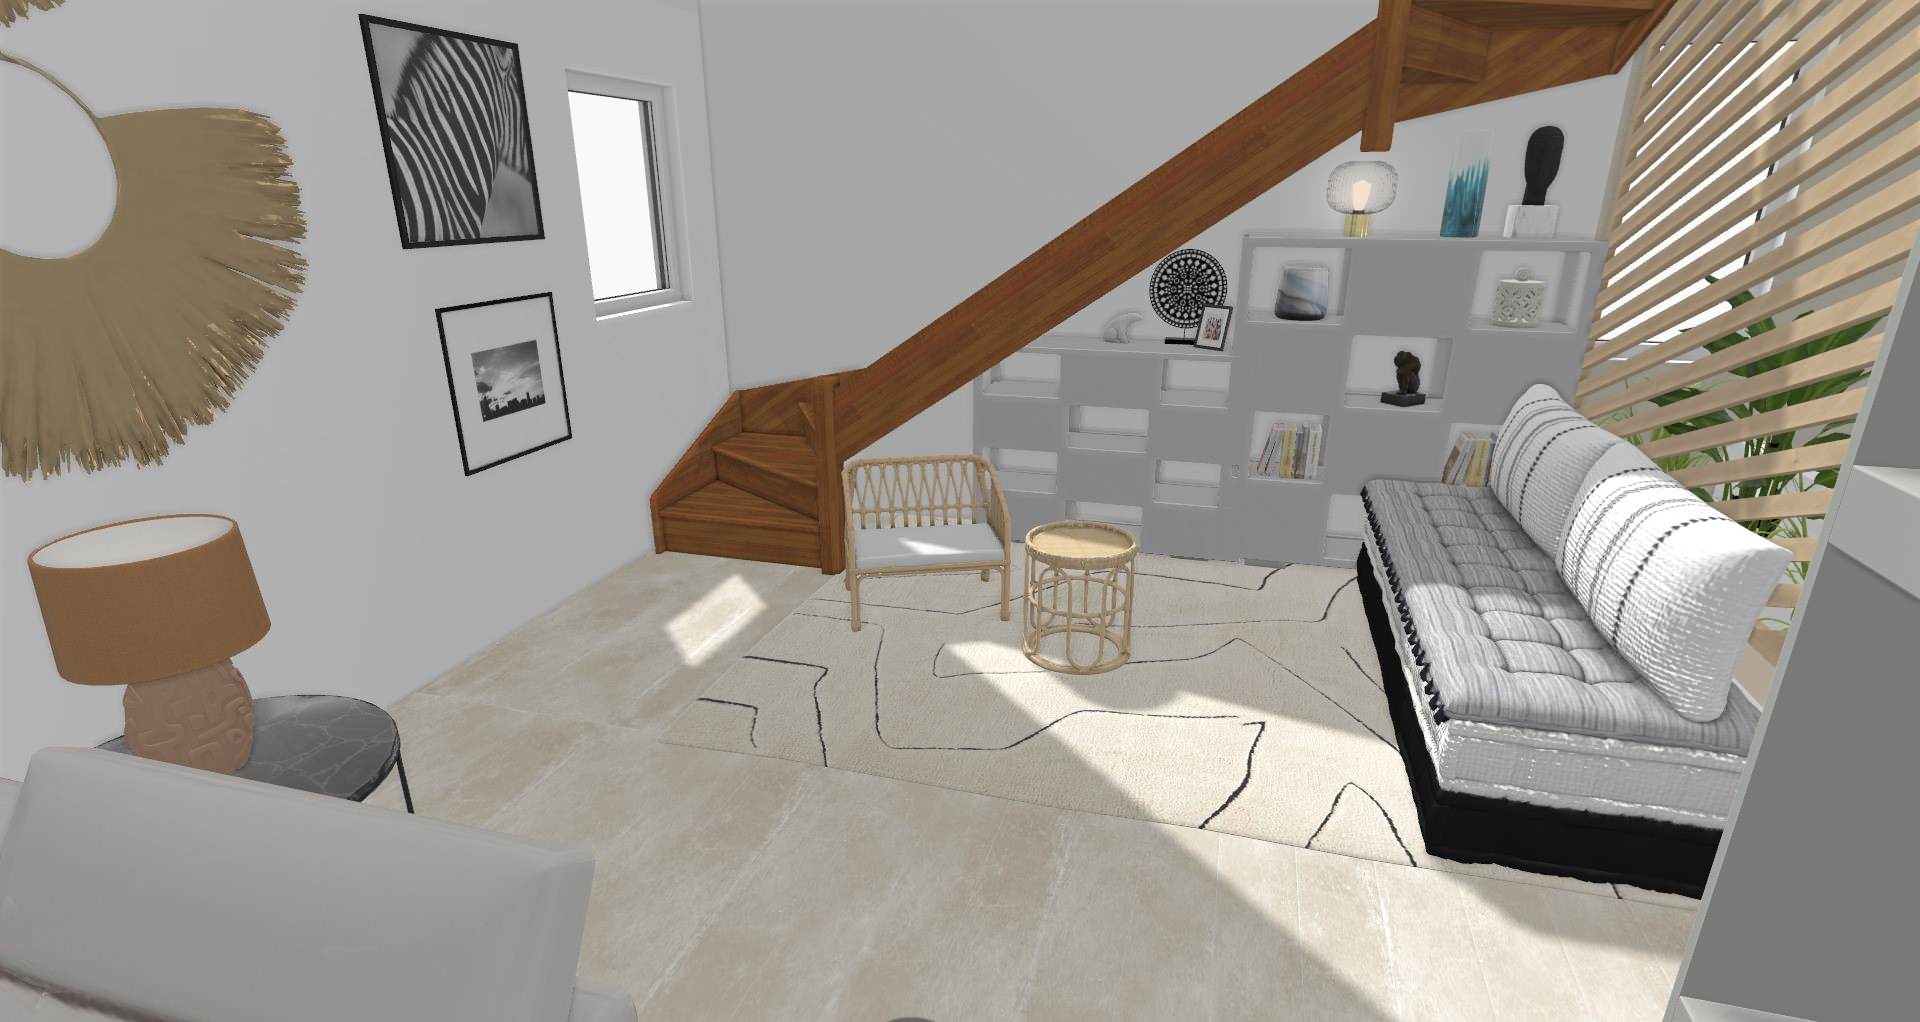 Vue 3D agencement de l'espace sous escalier